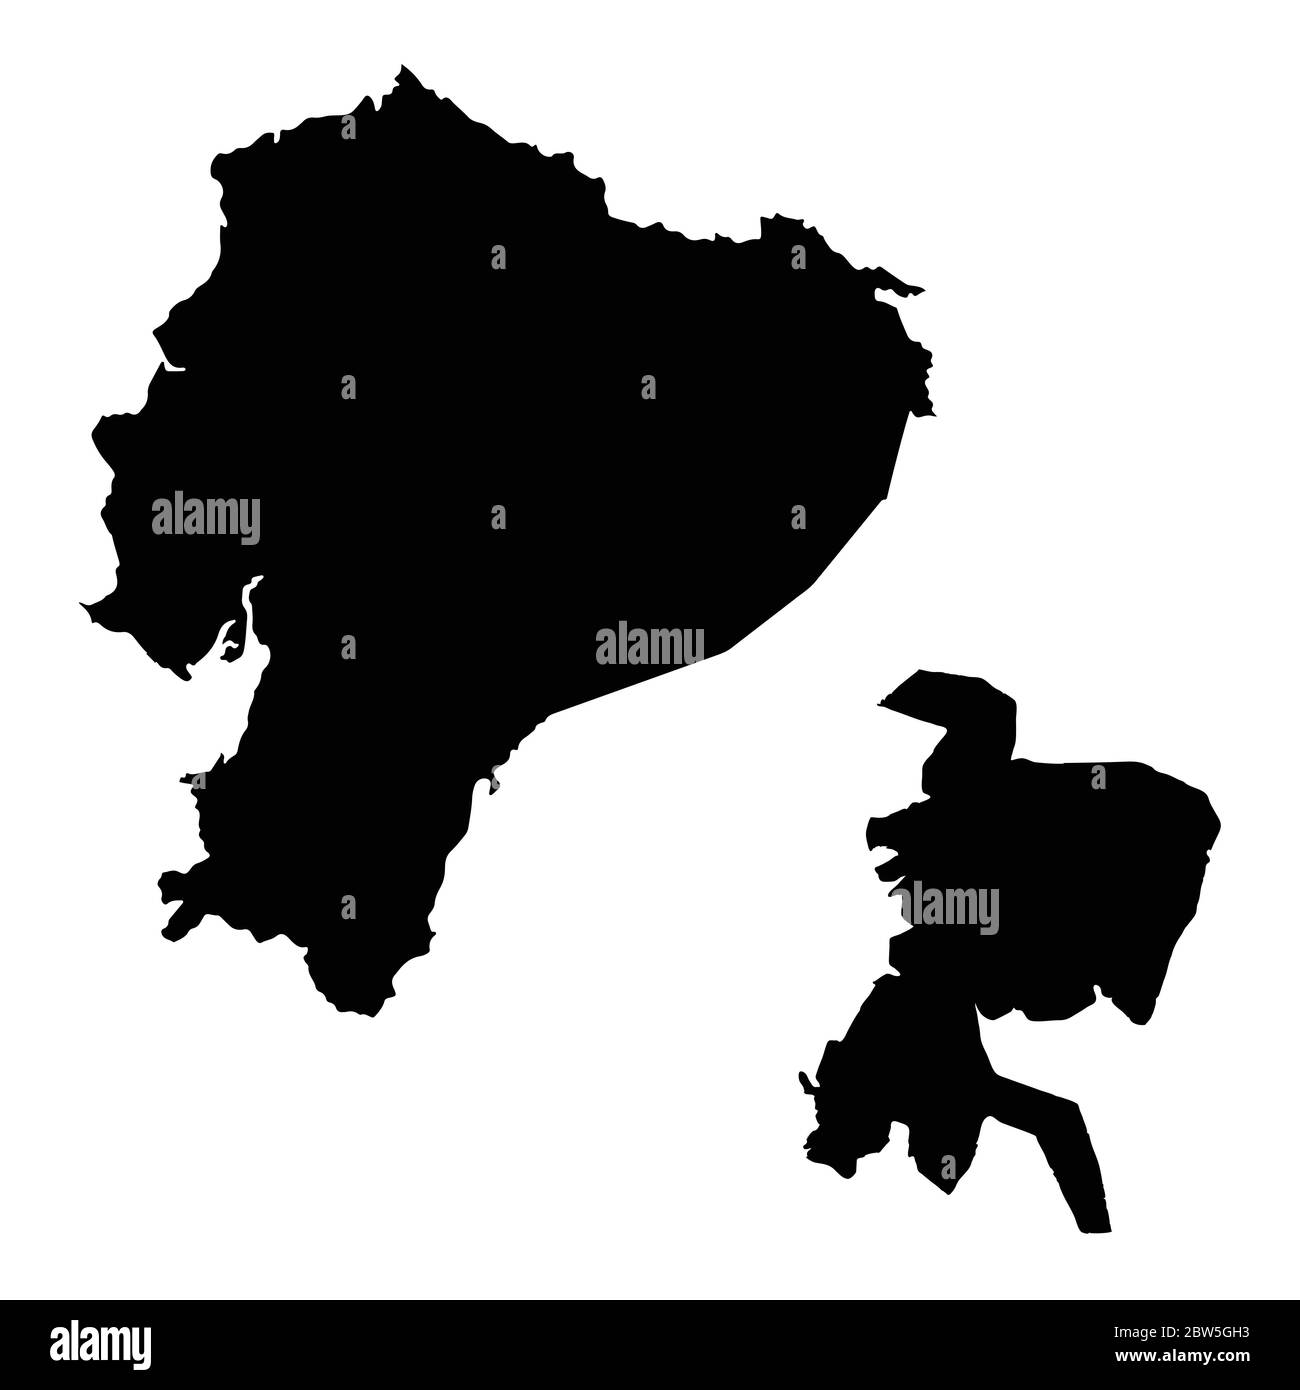 Vektorkarte Ecuador und Quito. Land und Hauptstadt. Isolierte Vektorgrafik. Schwarz auf weißem Hintergrund. EPS 10-Abbildung. Stock Vektor